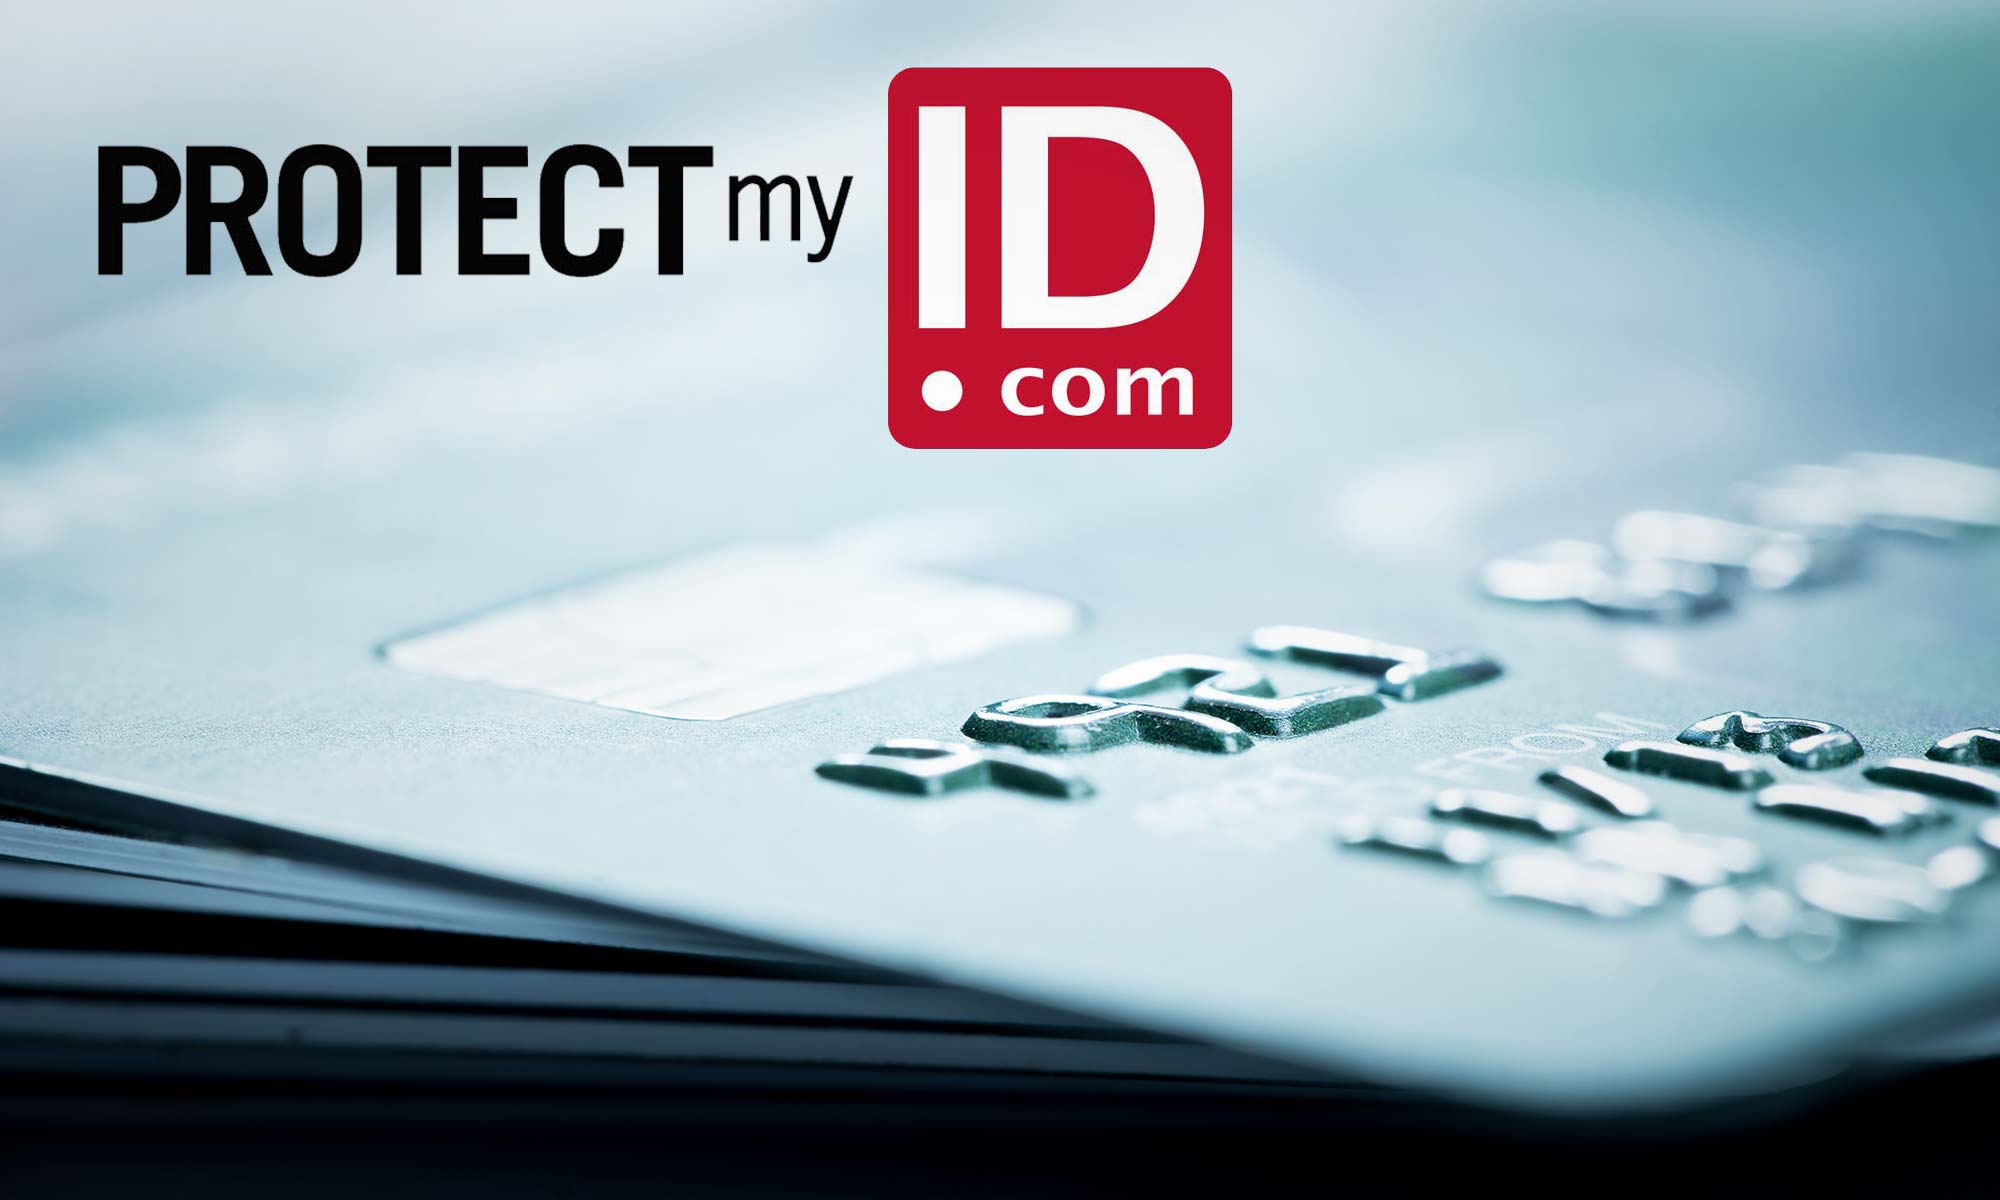 Protejarea ID -ului meu merită?